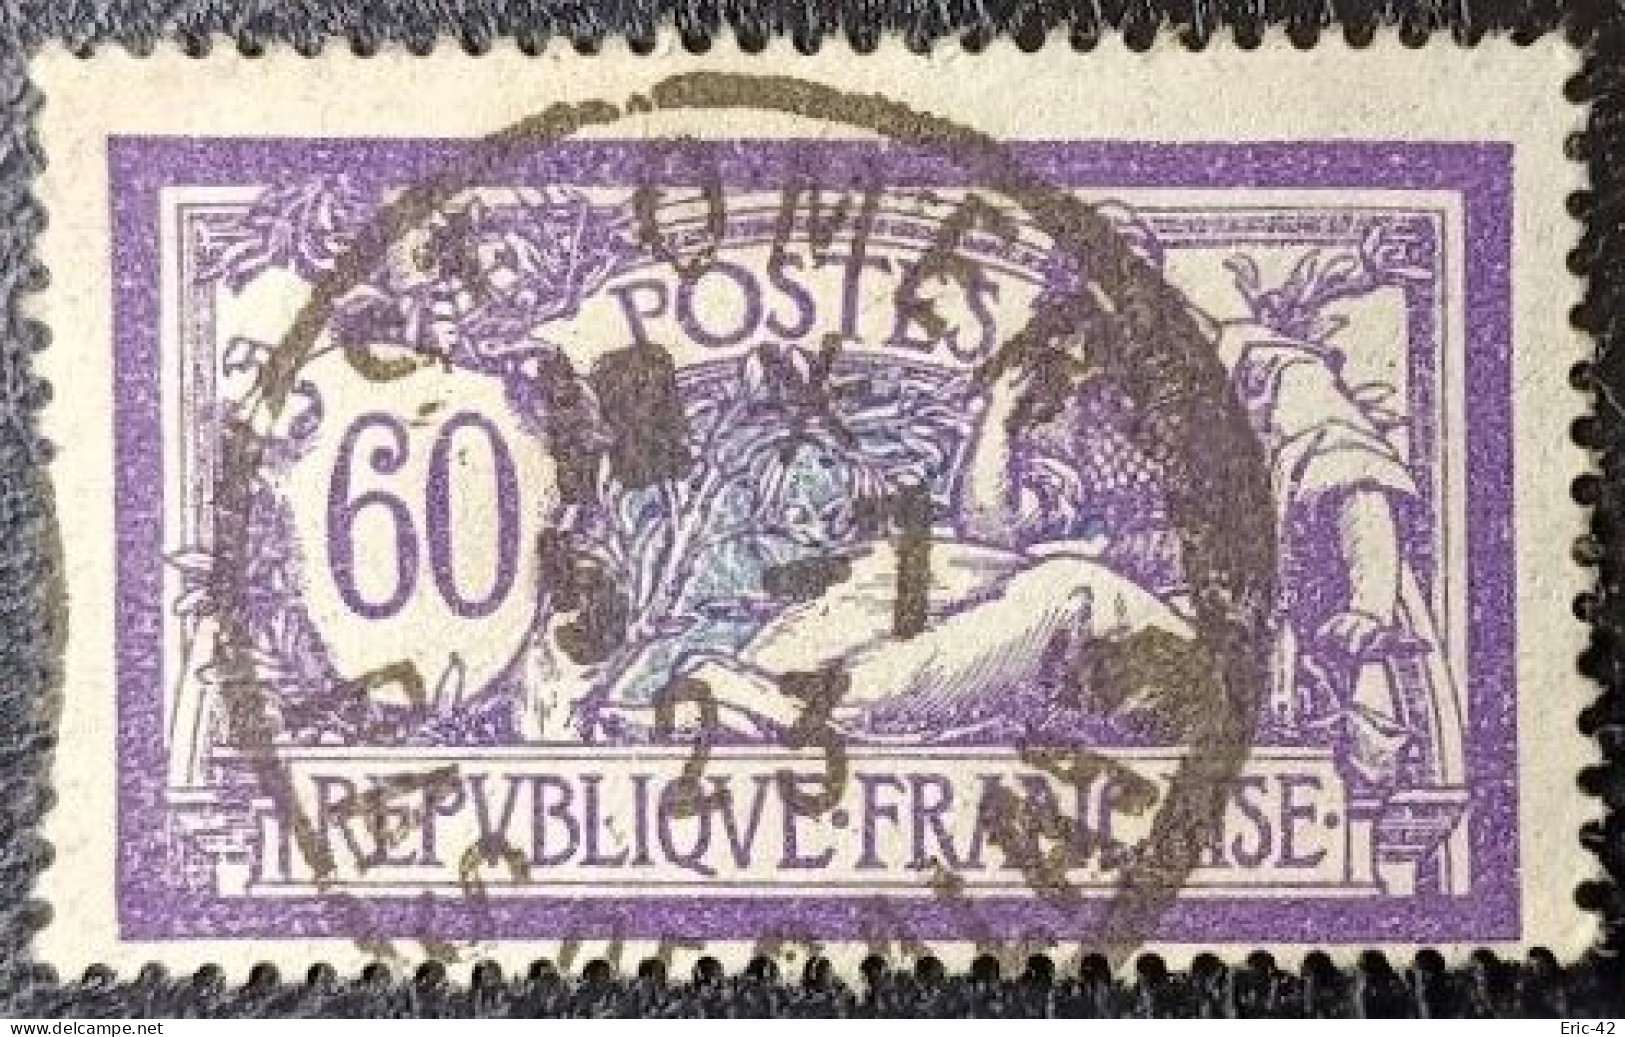 N°144 MERSON 60c Violet Et Bleu. Cachet Du 5 Juillet 1923 à Saint-Omer. - 1900-27 Merson